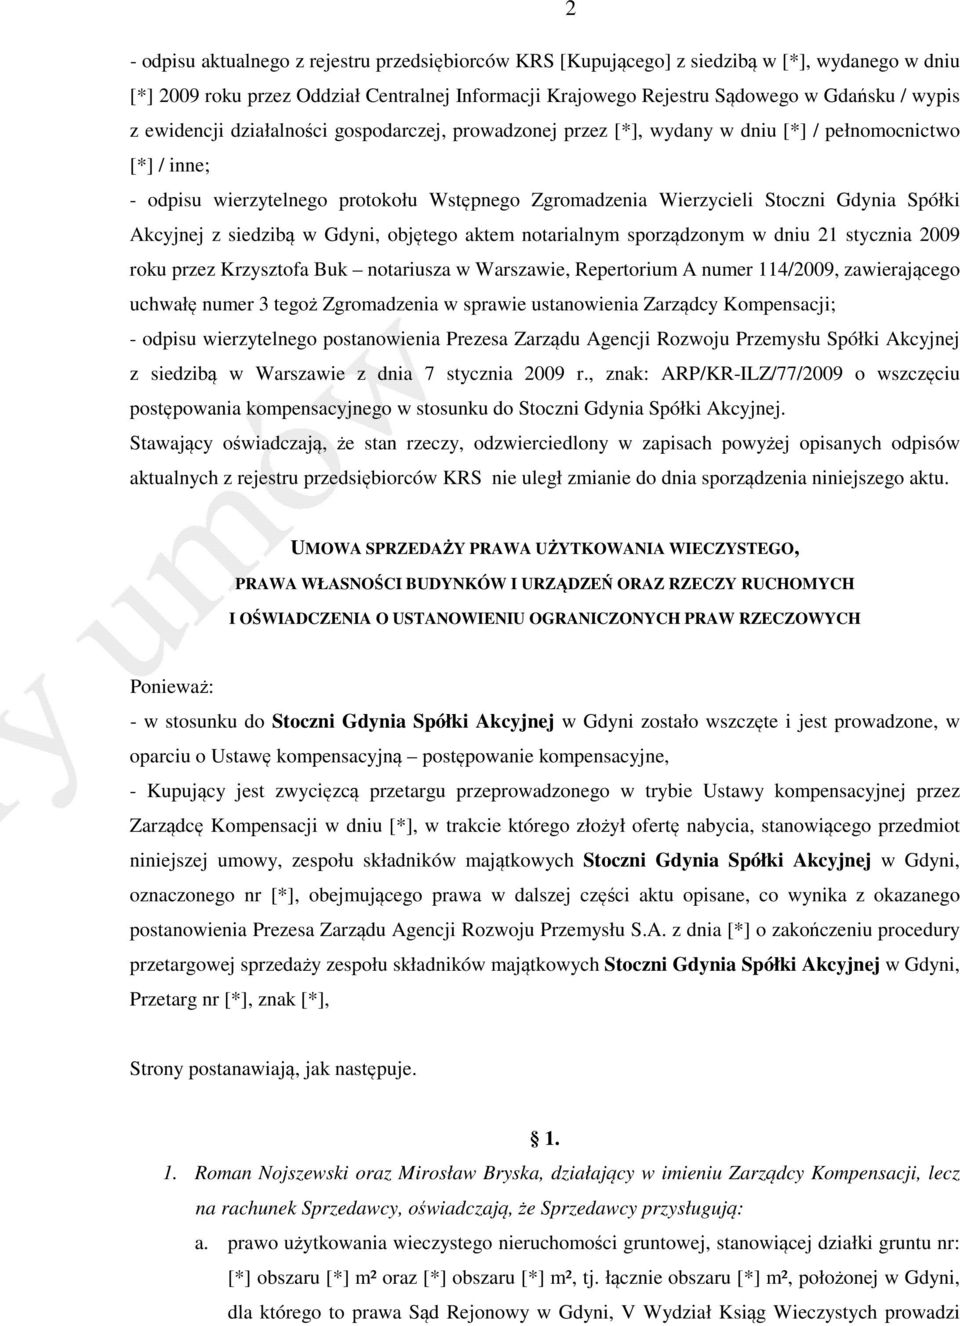 Akcyjnej z siedzibą w Gdyni, objętego aktem notarialnym sporządzonym w dniu 21 stycznia 2009 roku przez Krzysztofa Buk notariusza w Warszawie, Repertorium A numer 114/2009, zawierającego uchwałę